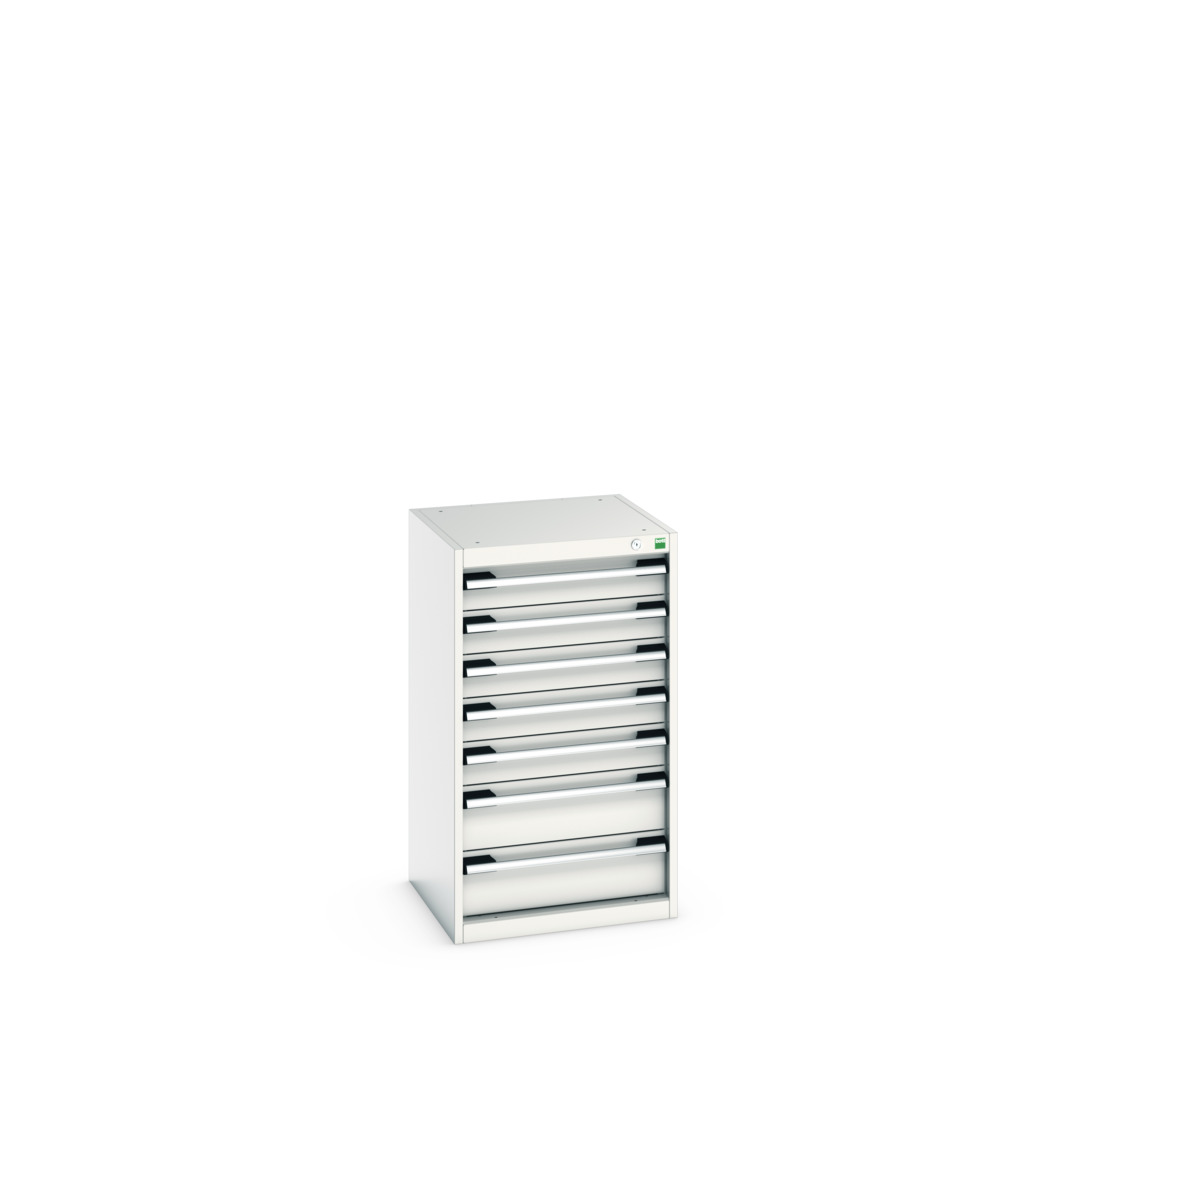 40010041.16V - cubio drawer cabinet